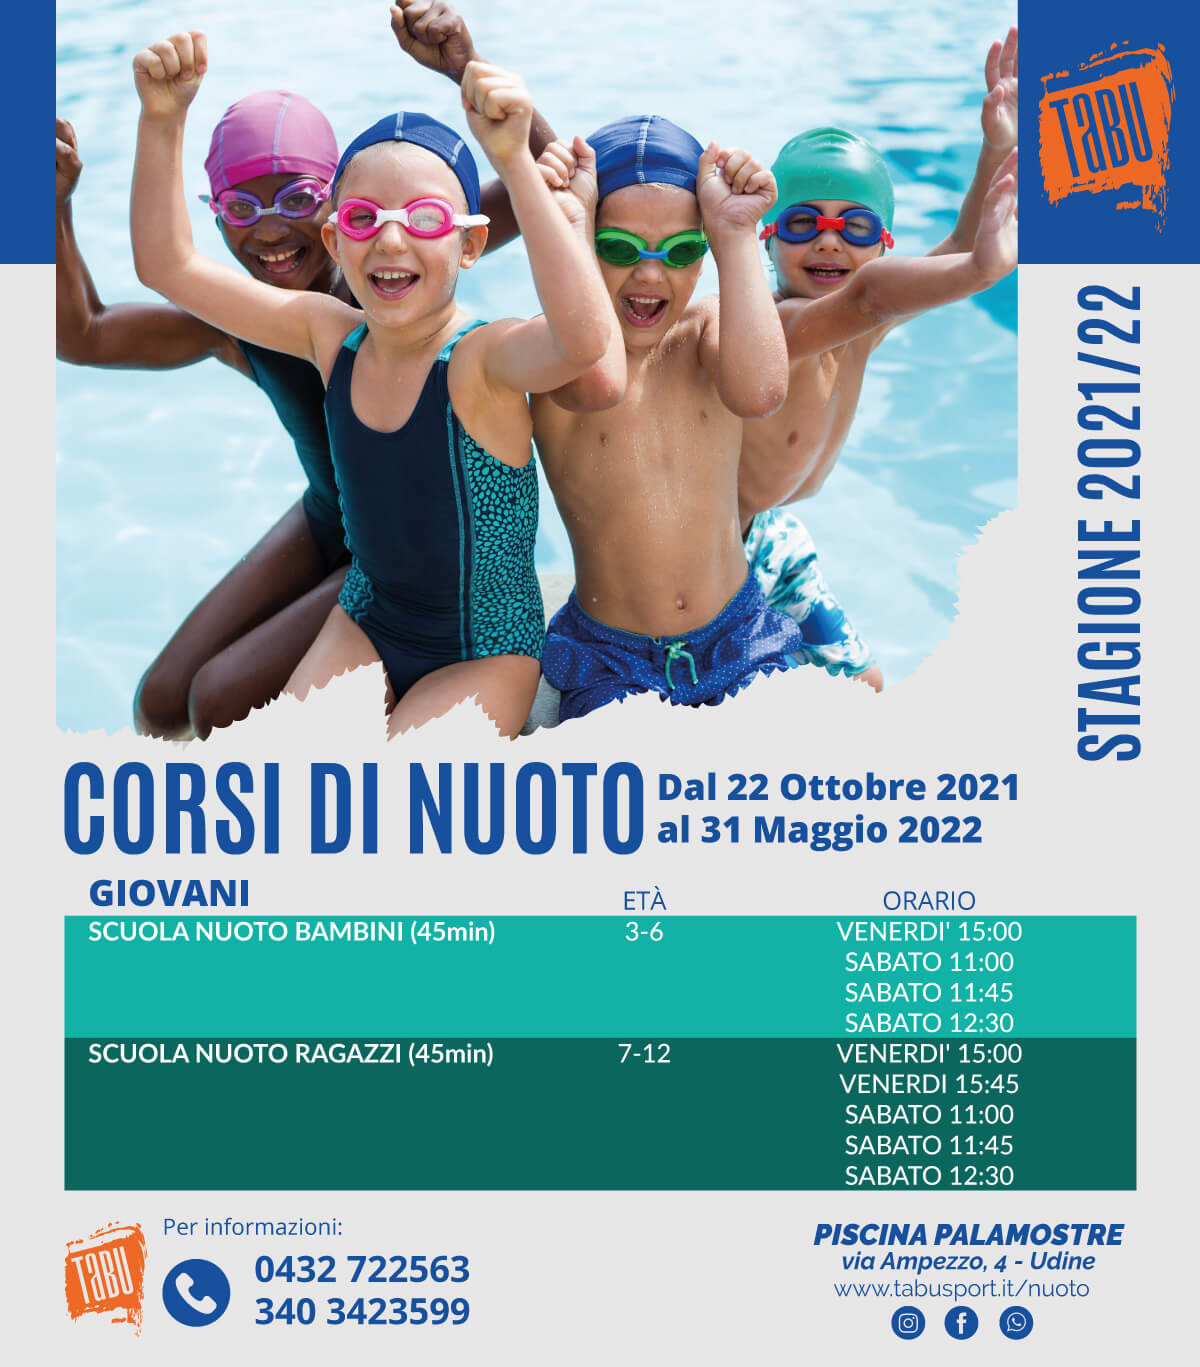 Corsi di nuoto a Udine per giovani